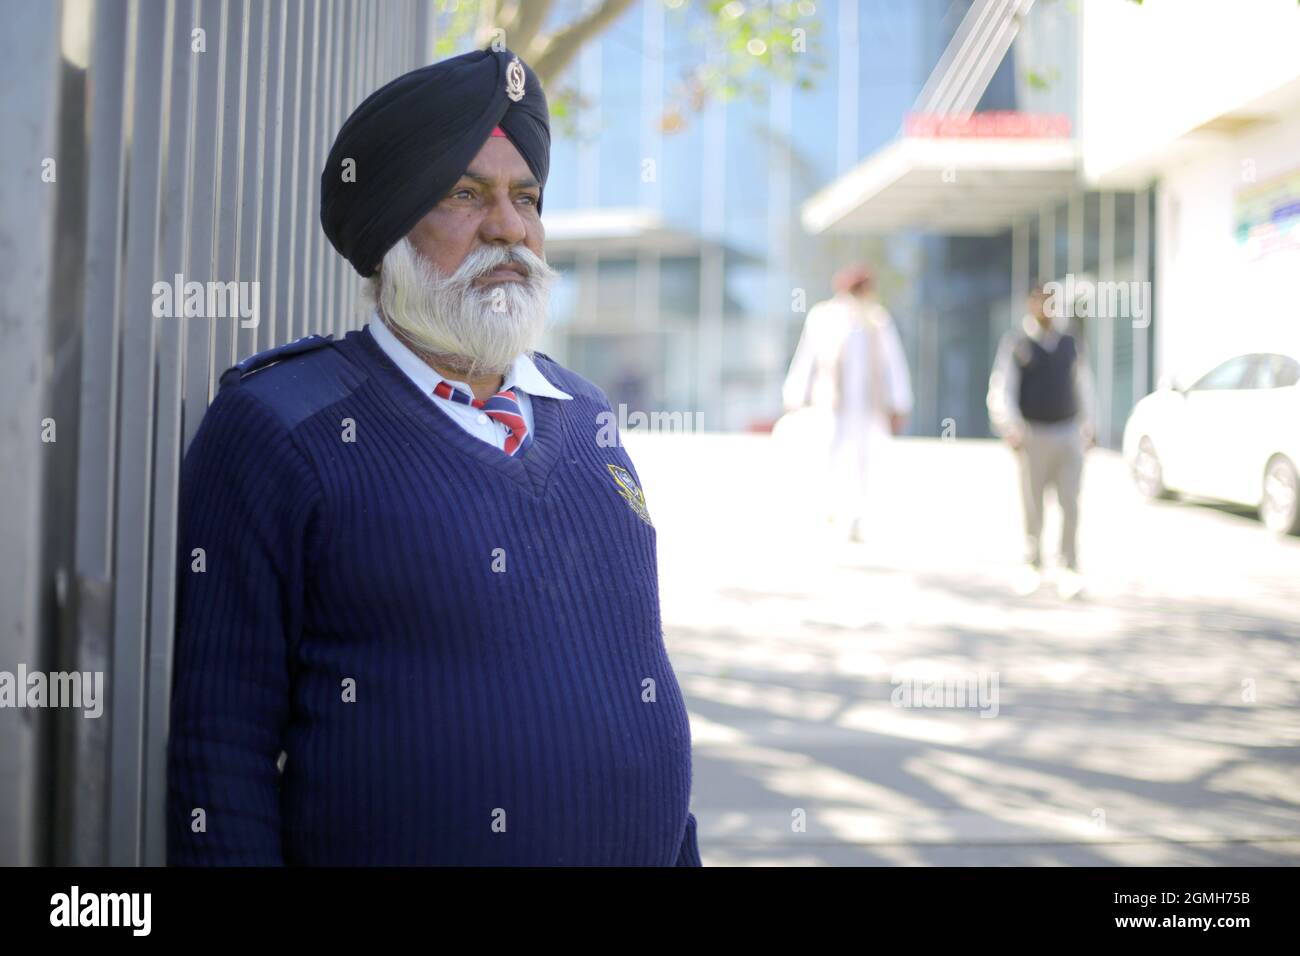 Garde de sécurité de l'ancien Sikh vêque de couleur bleue en position d'alerte Banque D'Images